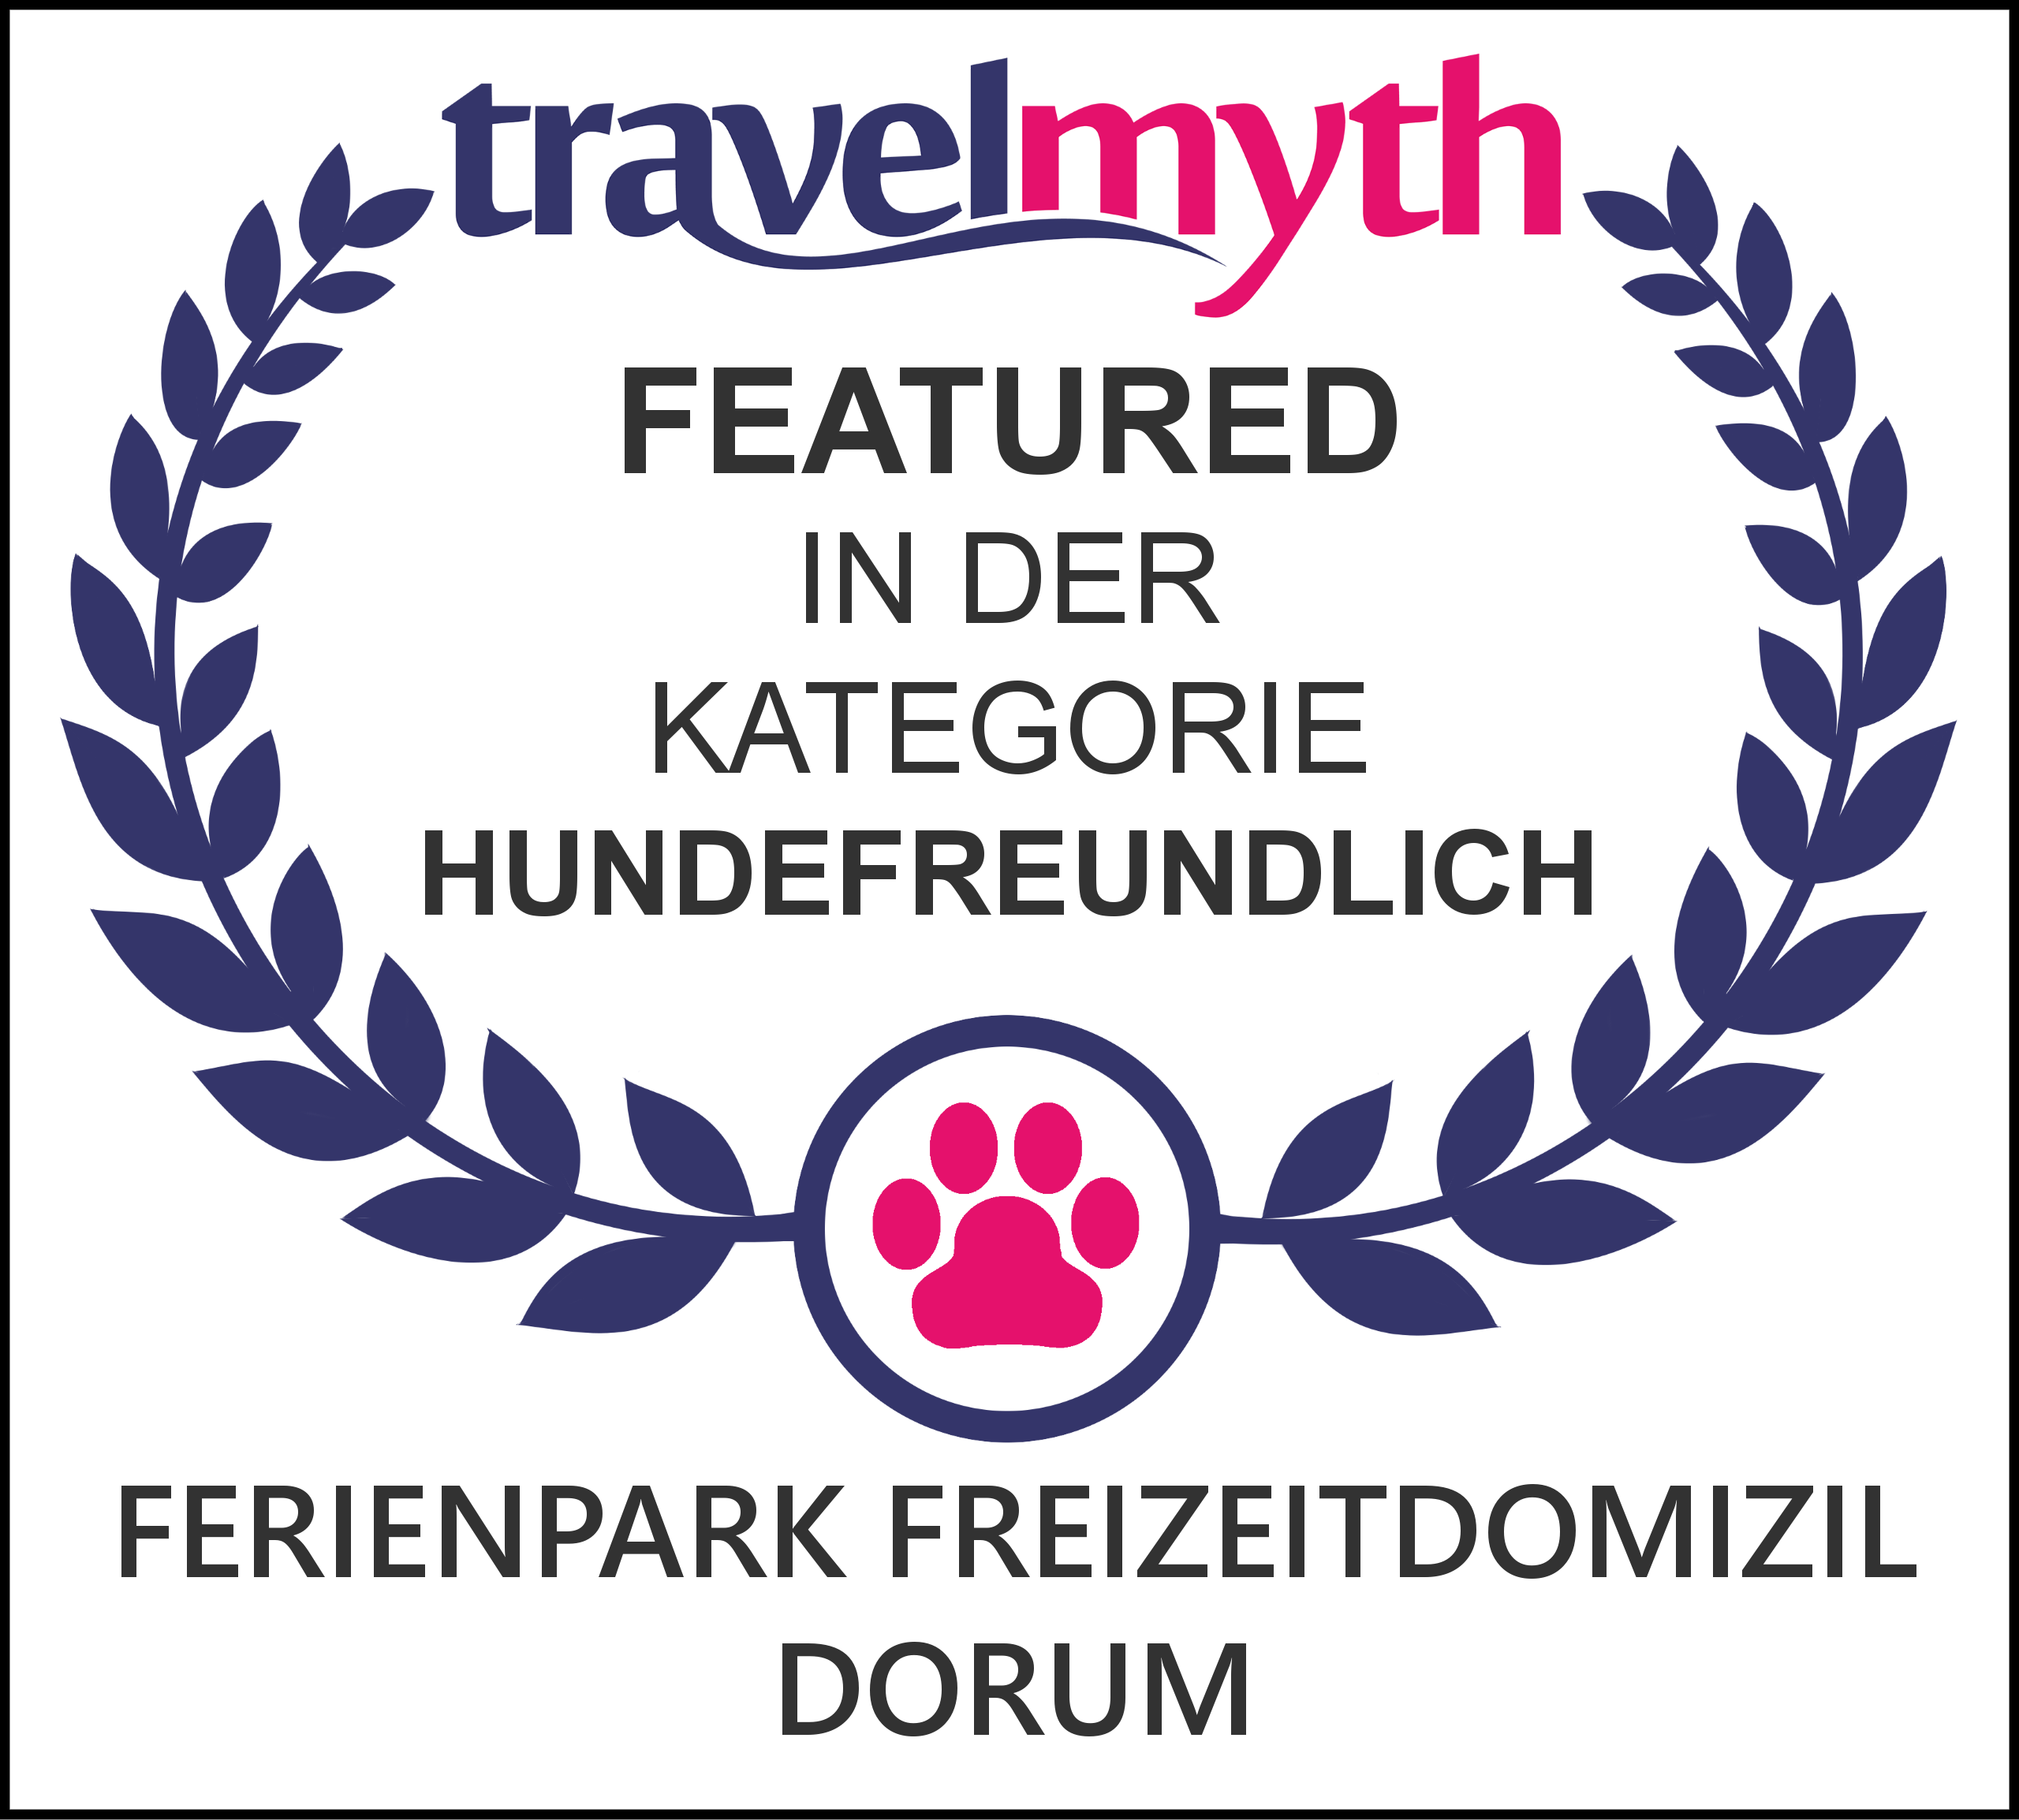 Dorum Neufeld hundefreundliche hotels